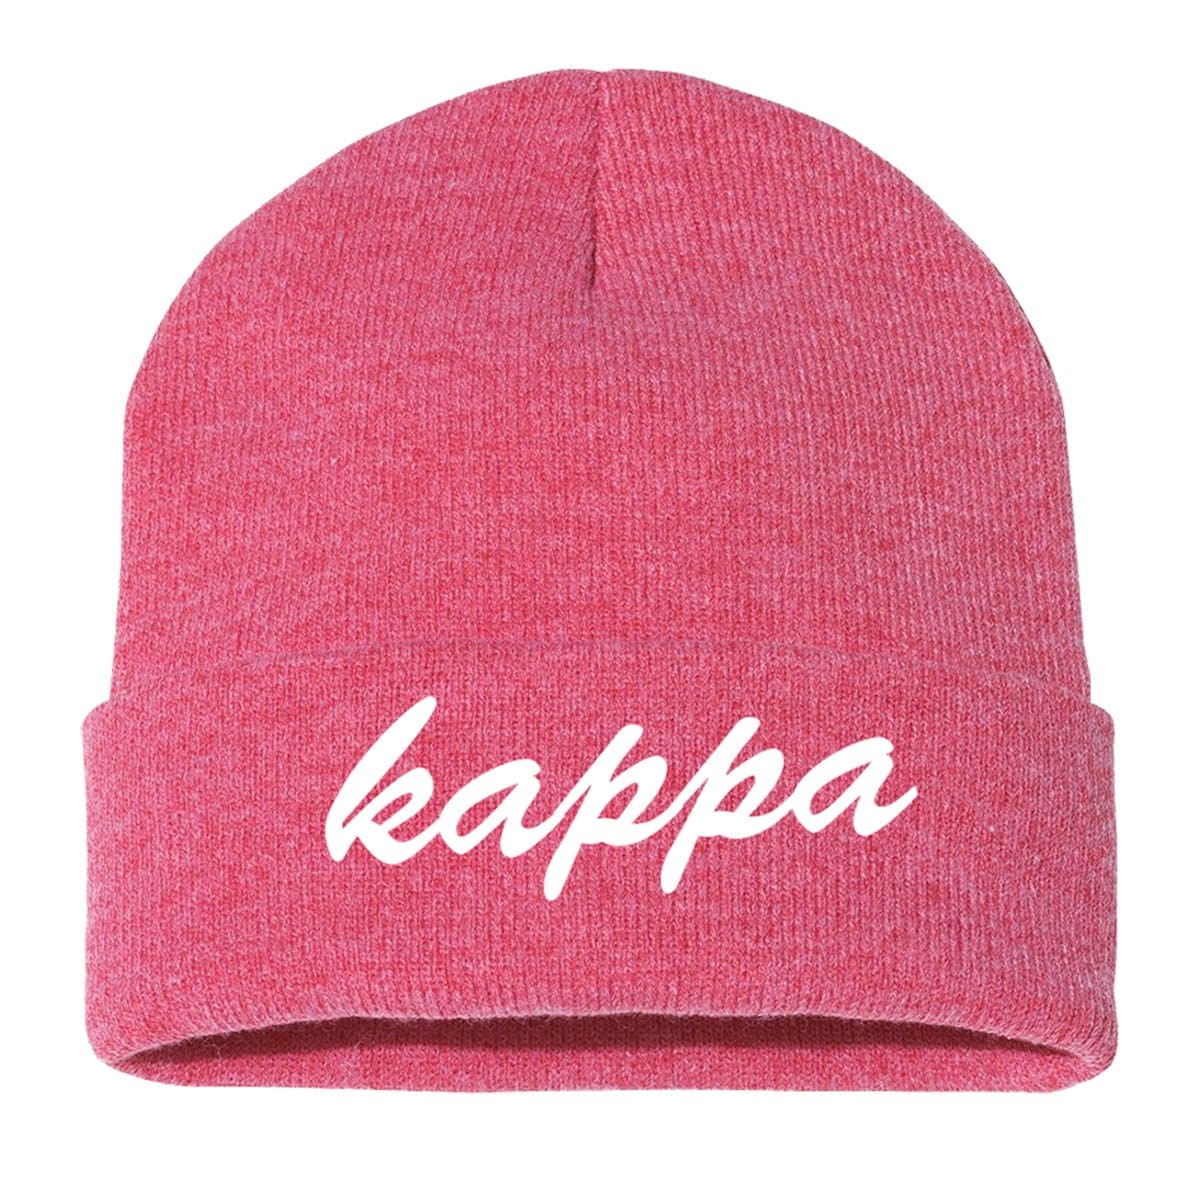 Kappa Classic Beanie | Kappa Kappa Gamma | Headwear > Beanies